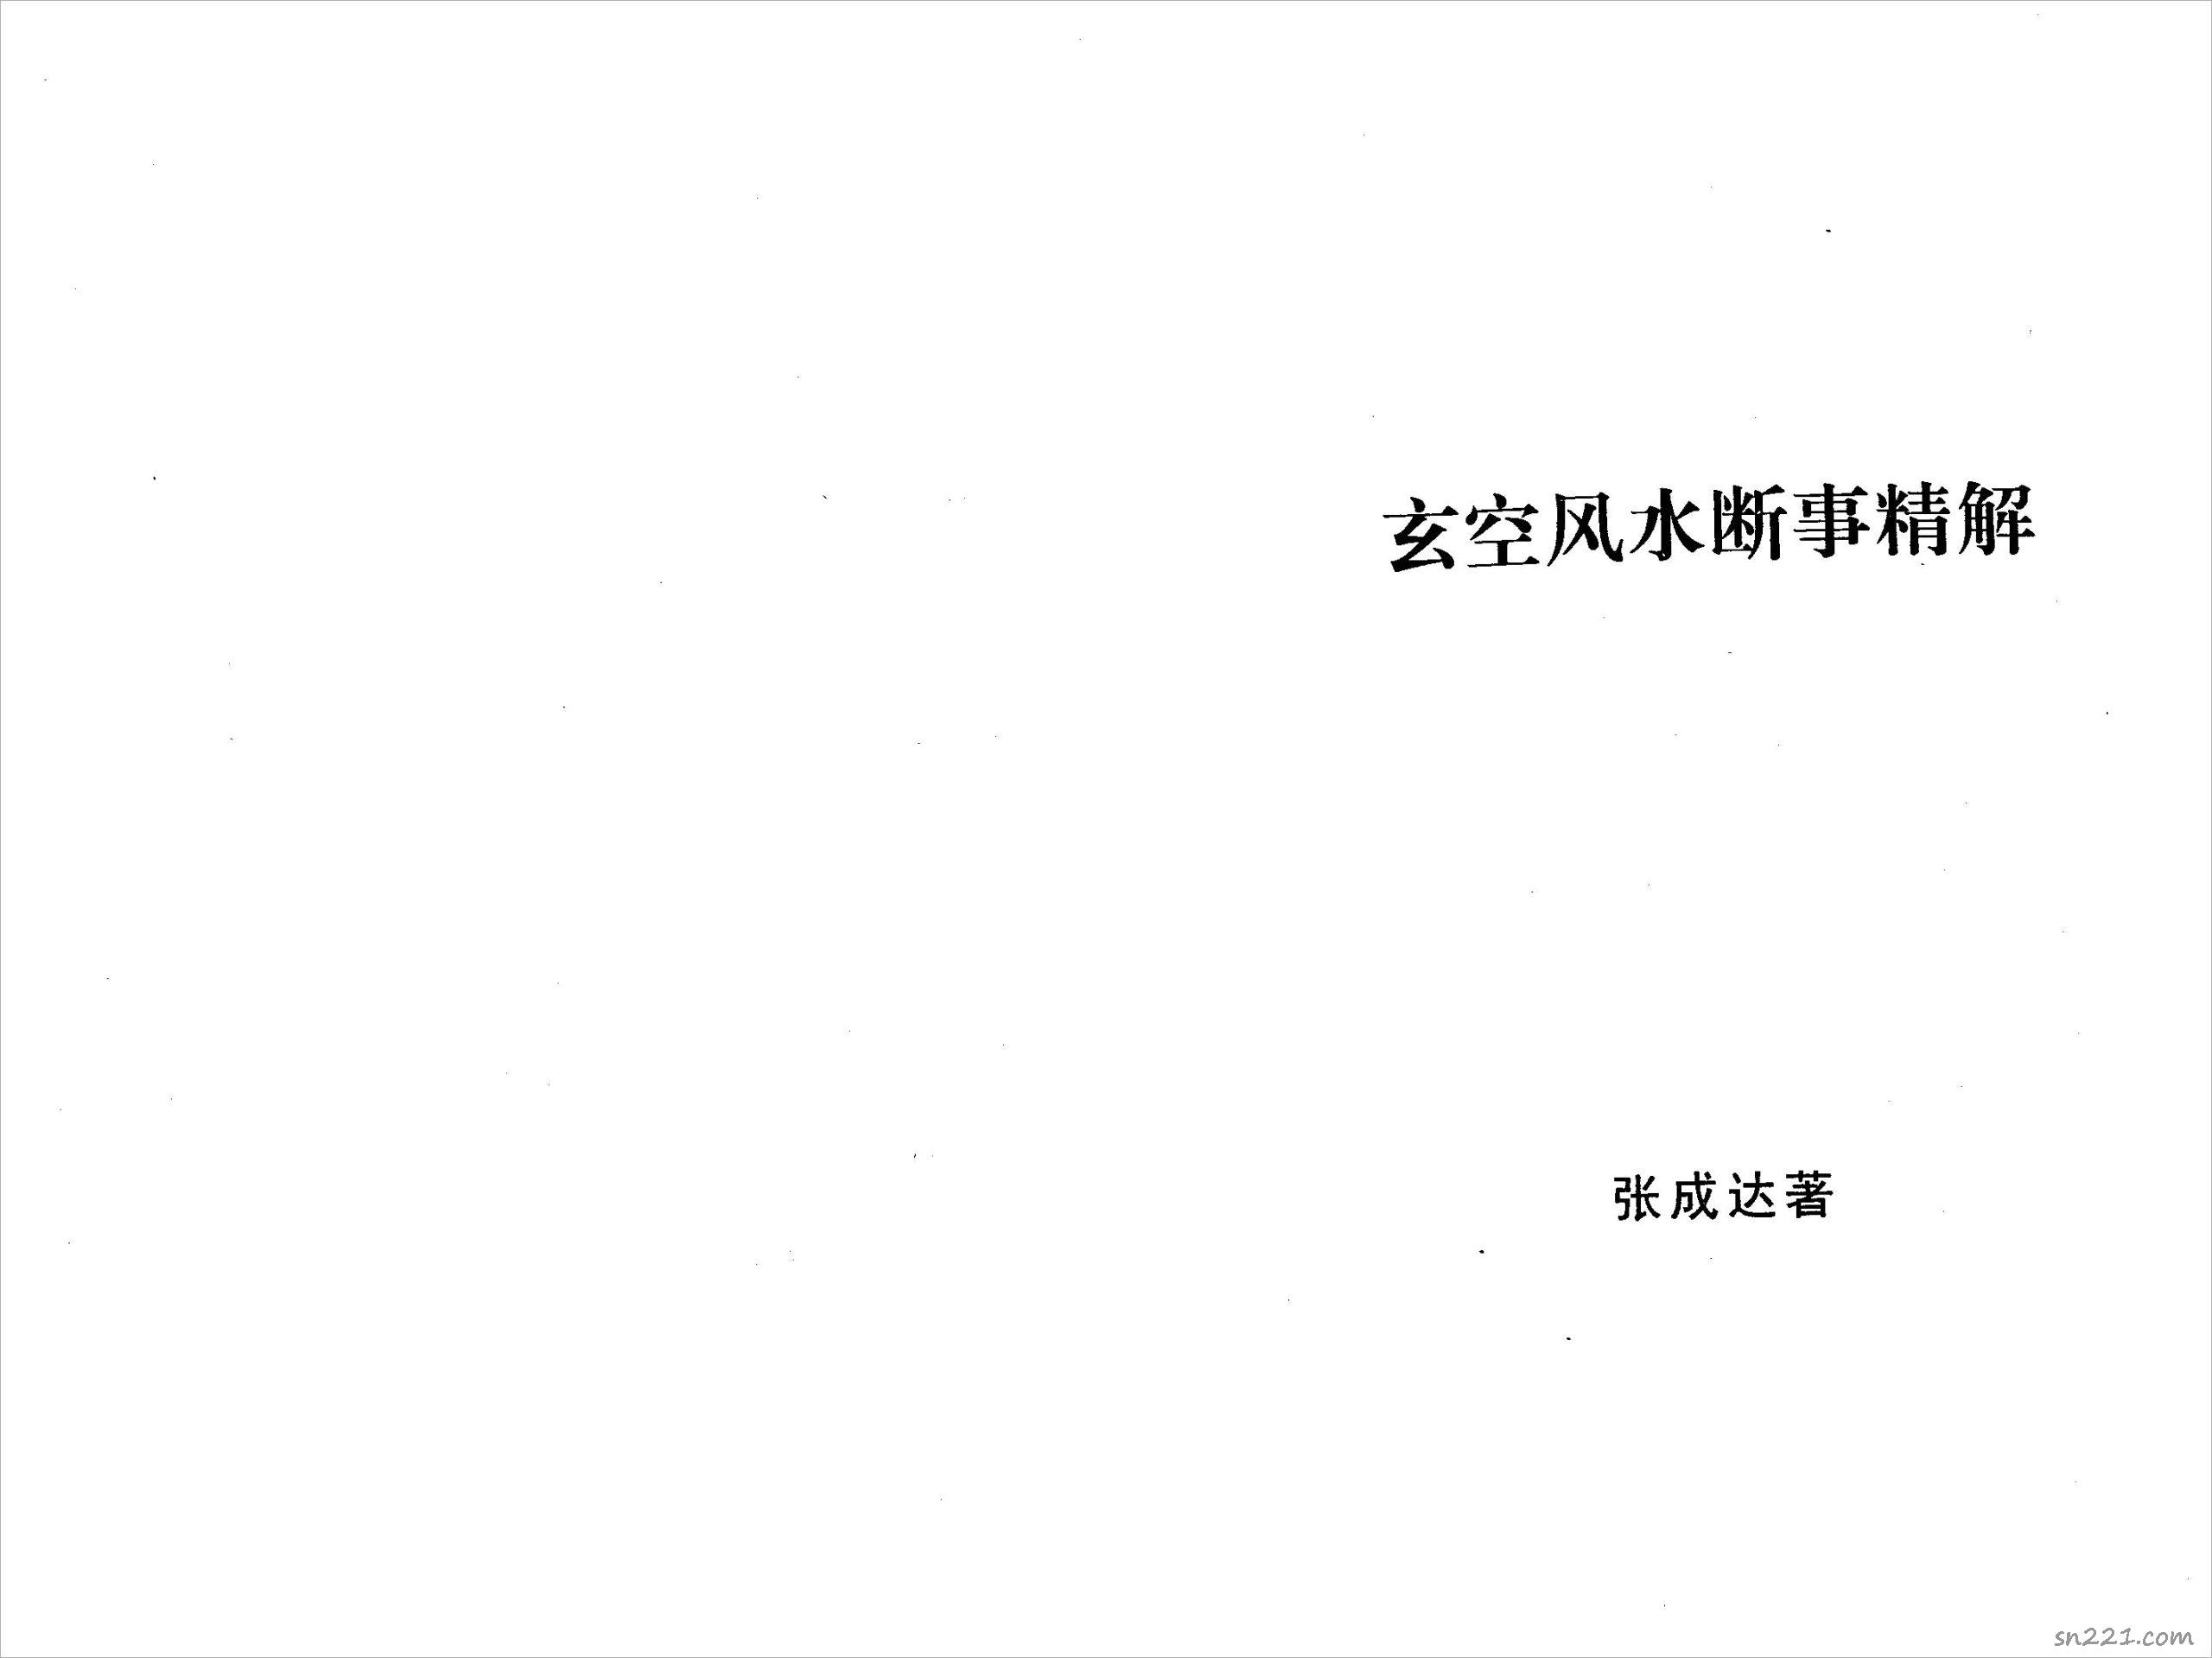 張成達-玄空風水斷事精解.pdf